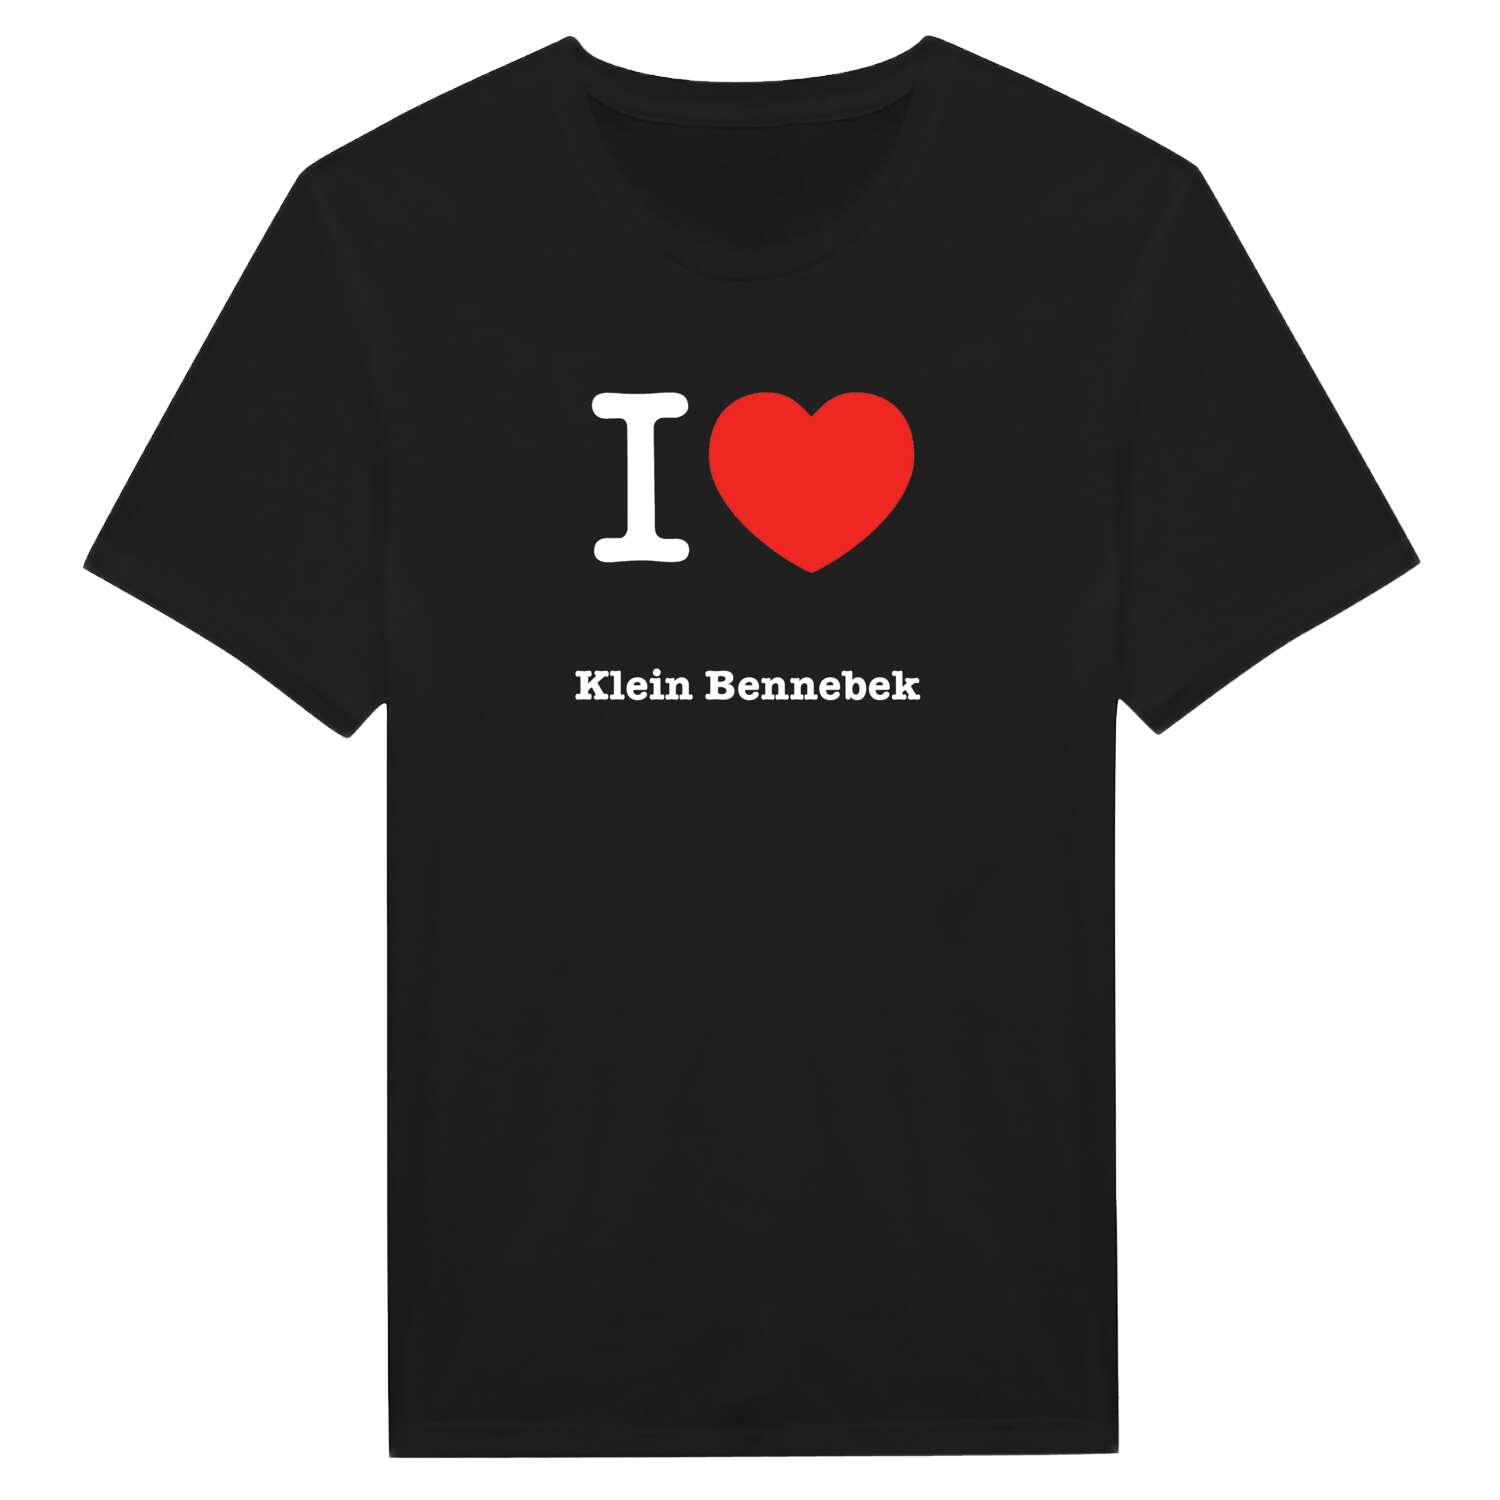 Klein Bennebek T-Shirt »I love«